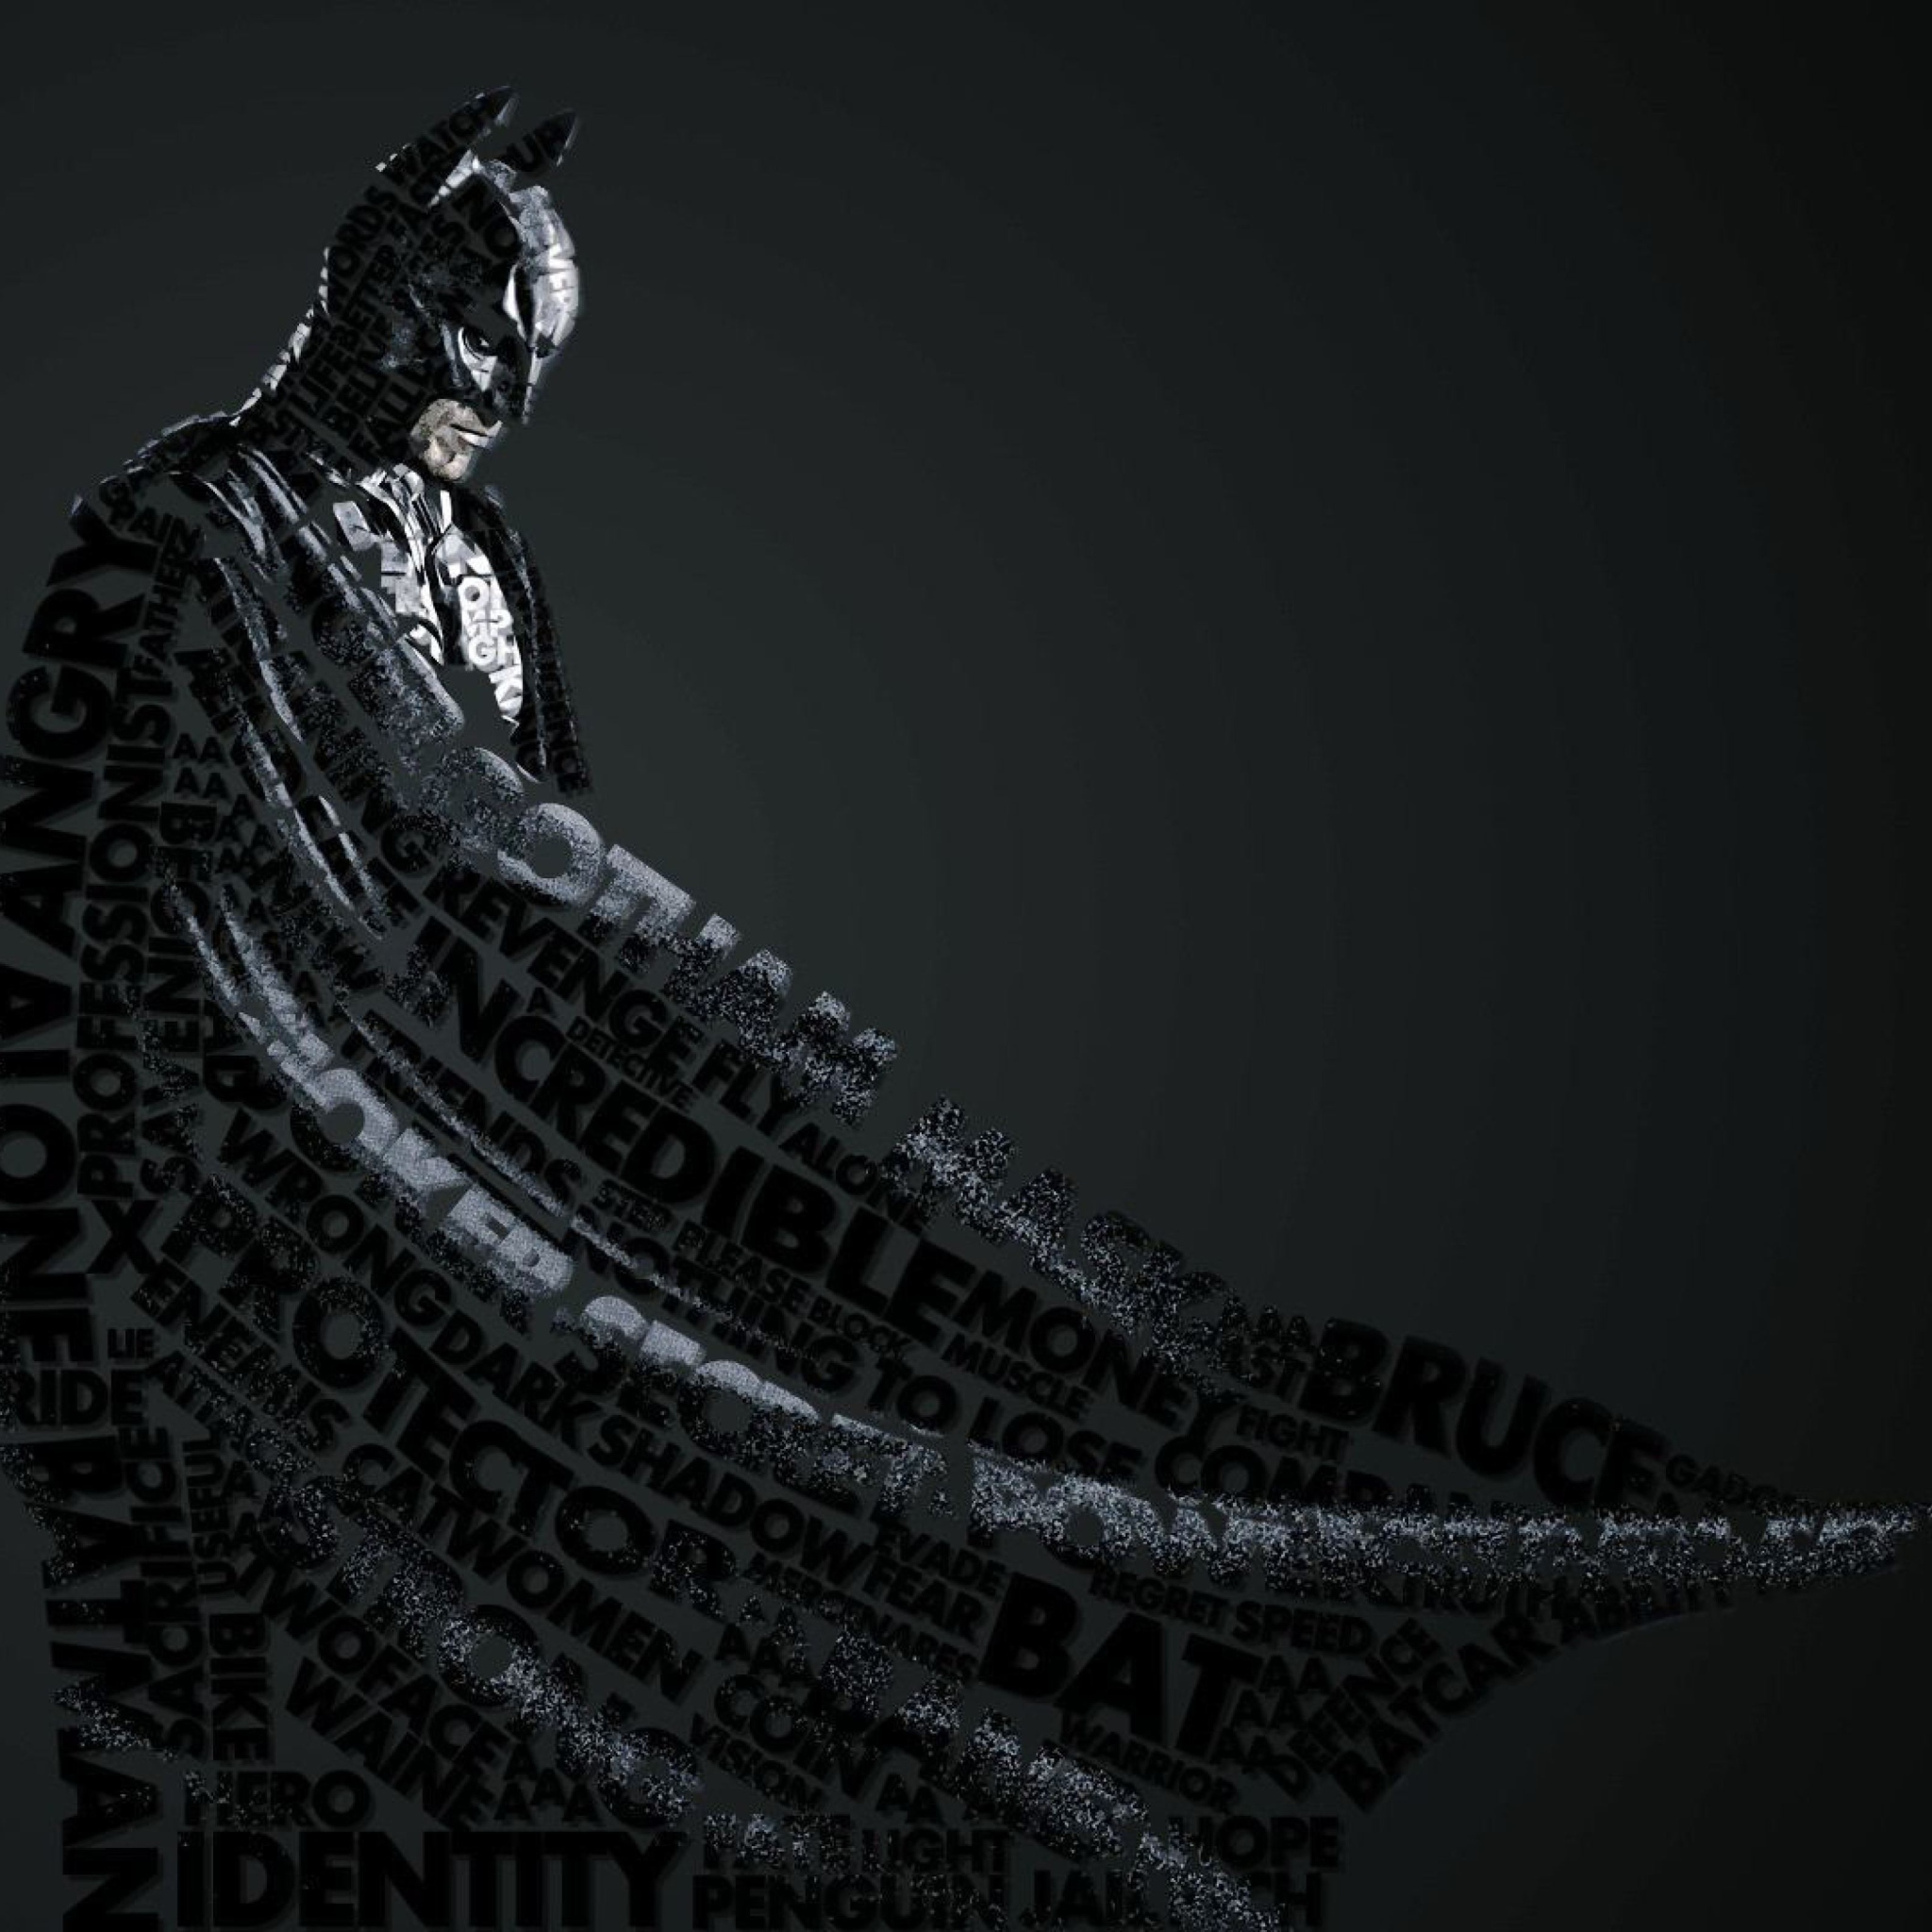 Das Batman Typography Wallpaper 2048x2048